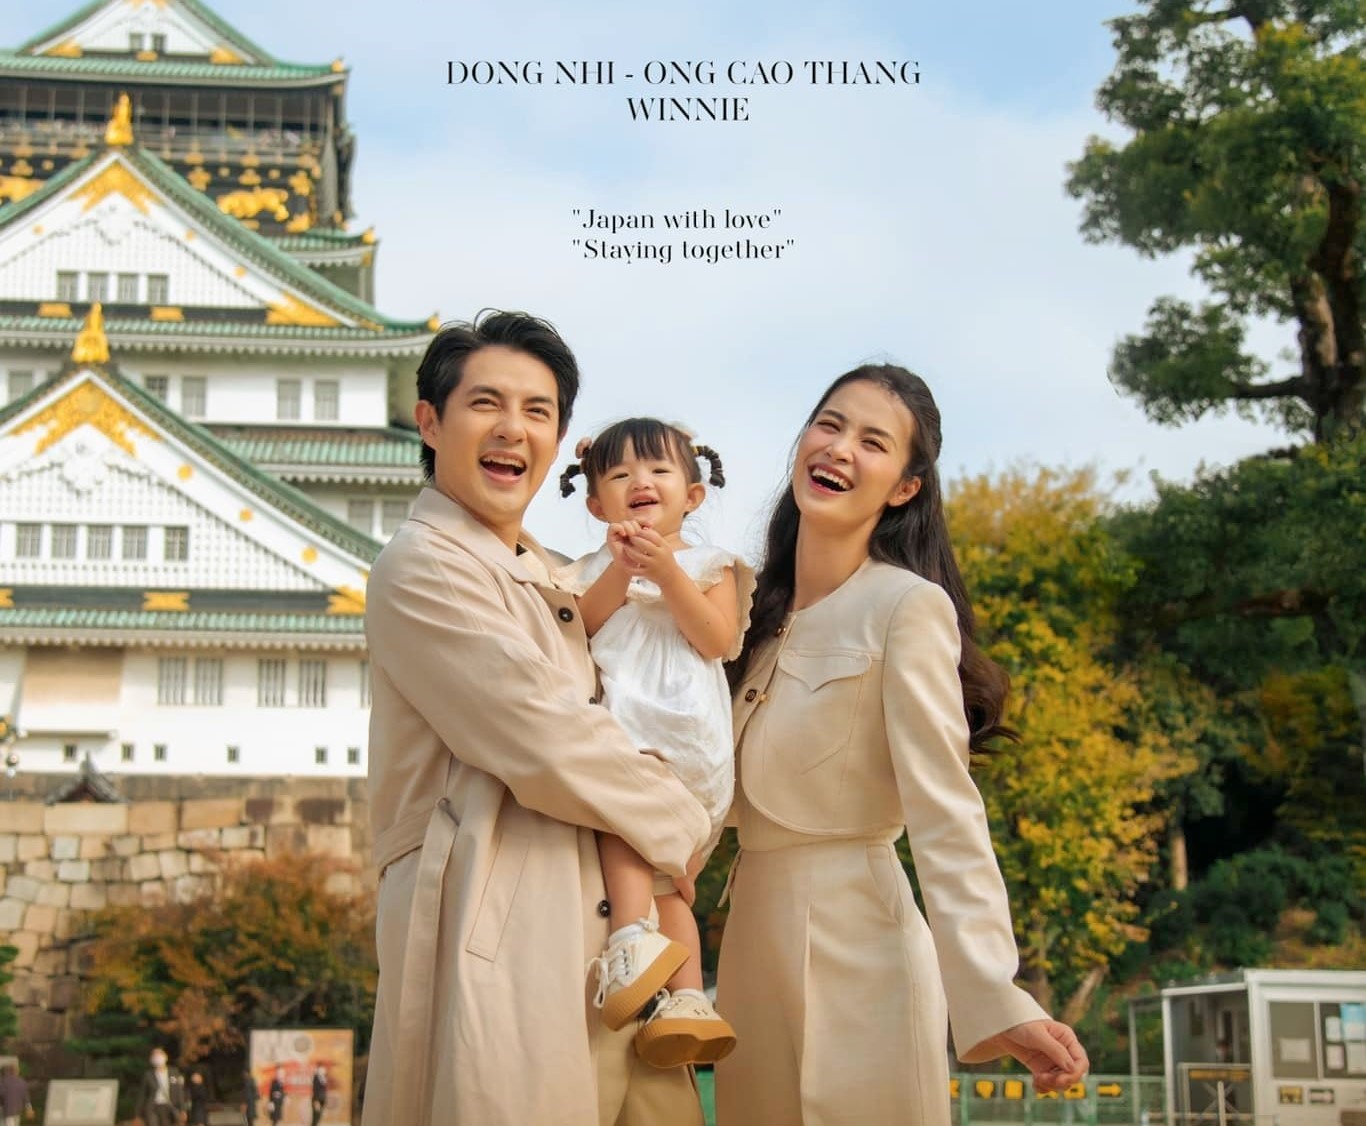 Poster MV có sự xuất hiện của bé Winnie - con gái nhỏ của Đông Nhi và Ông Cao Thắng đã được giới thiệu tới khán giả. Ảnh: Nhi Thắng Family